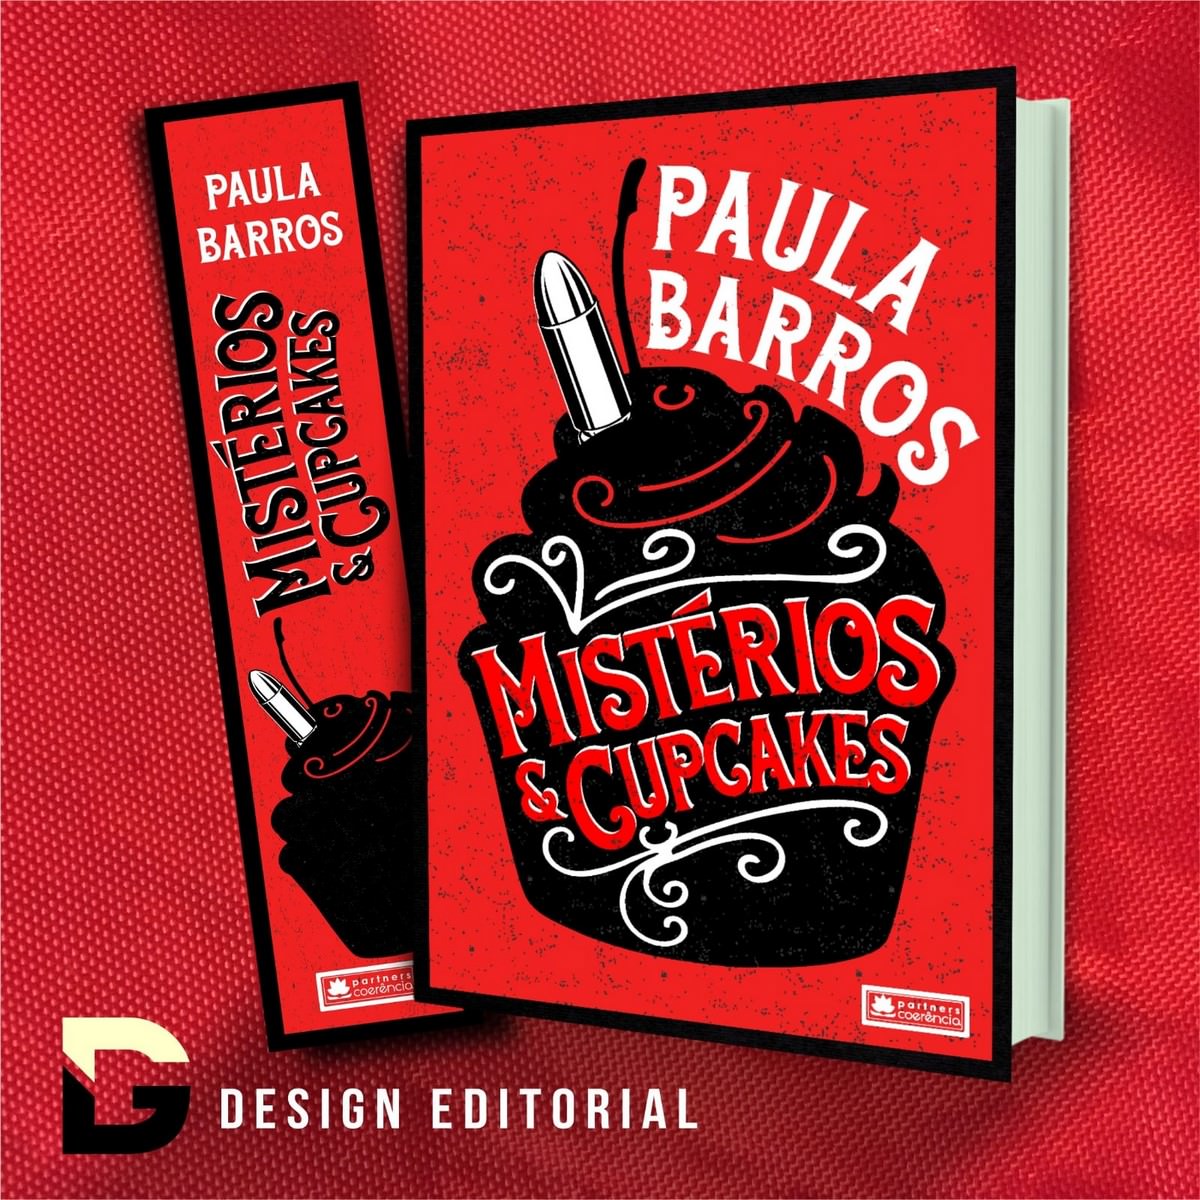 "Mystères et cupcakes", le premier livre de l'auteur Paula Barros, bannière. Divulgation.